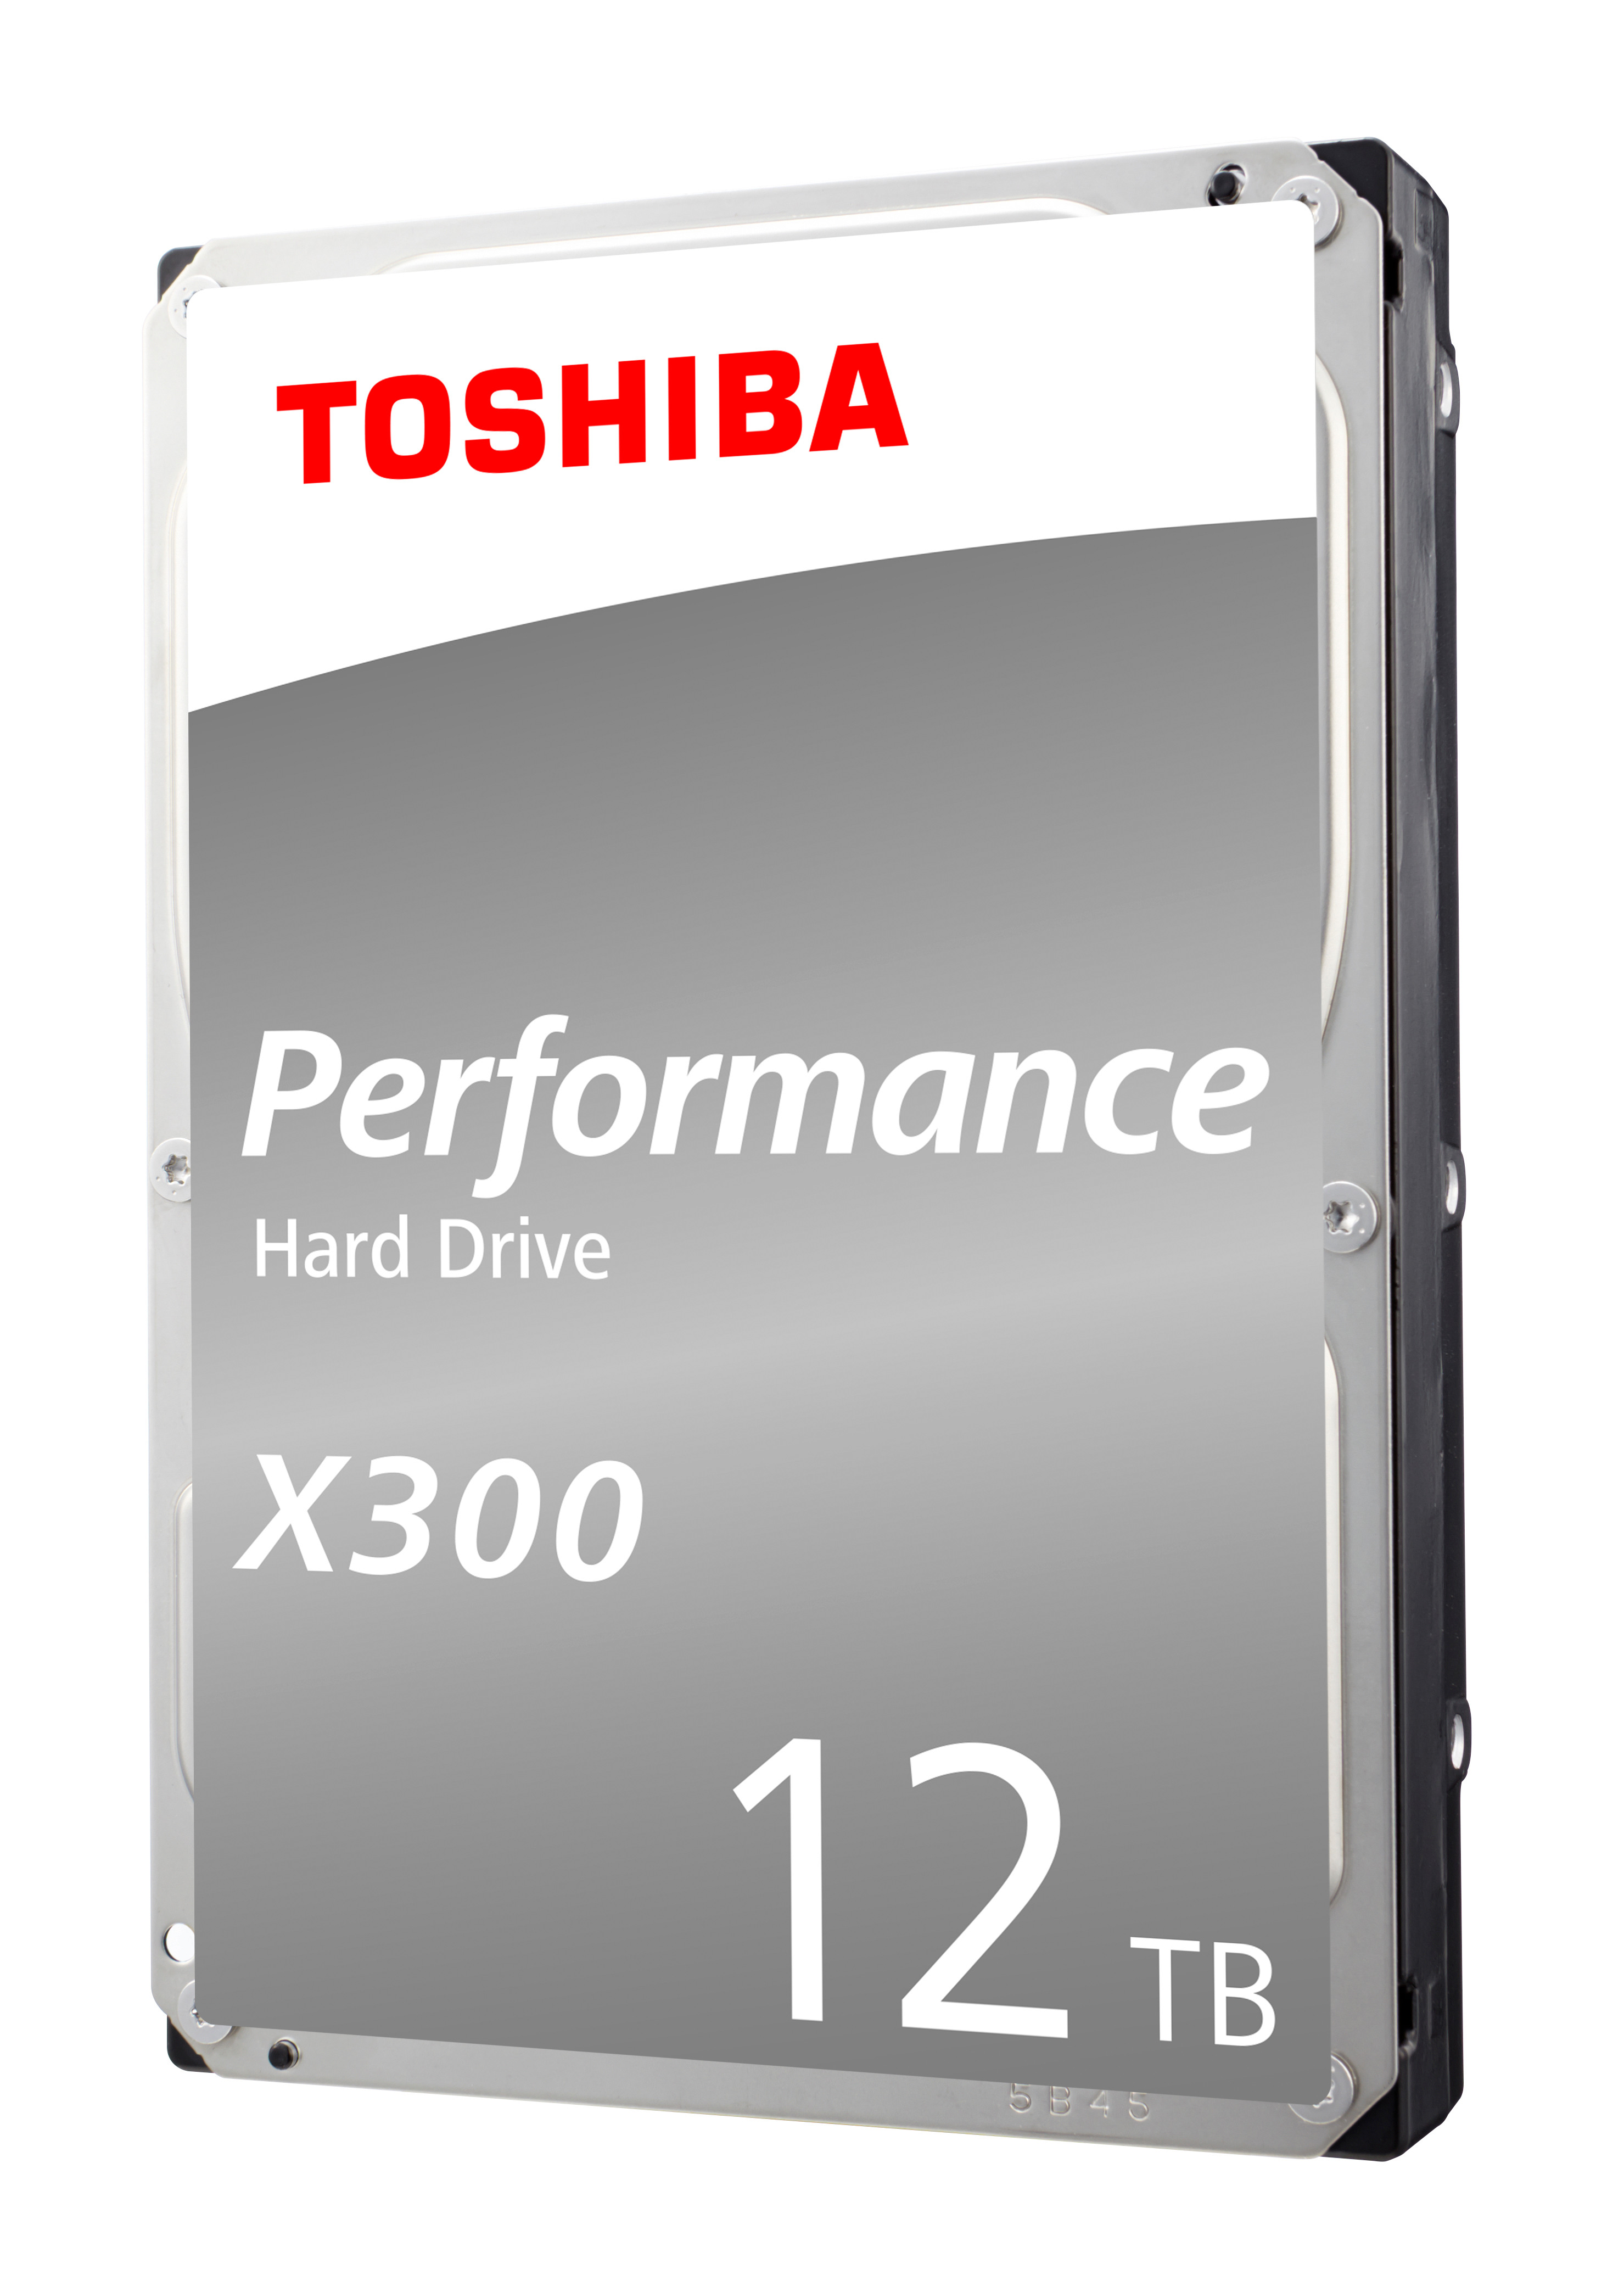 TOSHIBA HDD X300 High Performance 12TB HDWR21CEZSTA internal, SATA 3.5 inch